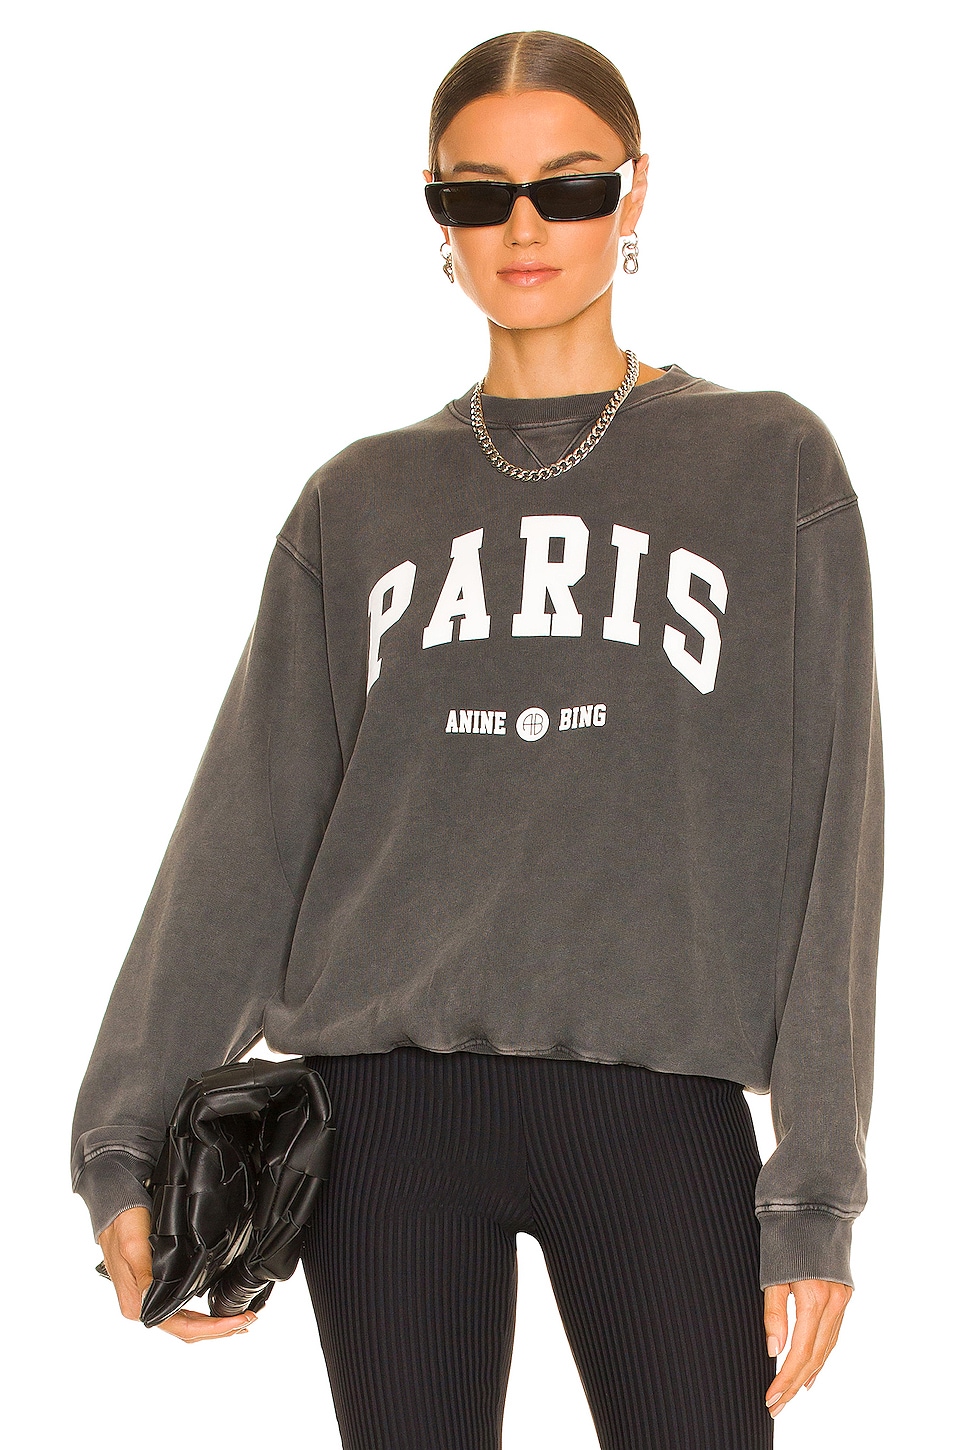 Ramona University Paris Sweatshirt ANINE BING brand:ANINE BING